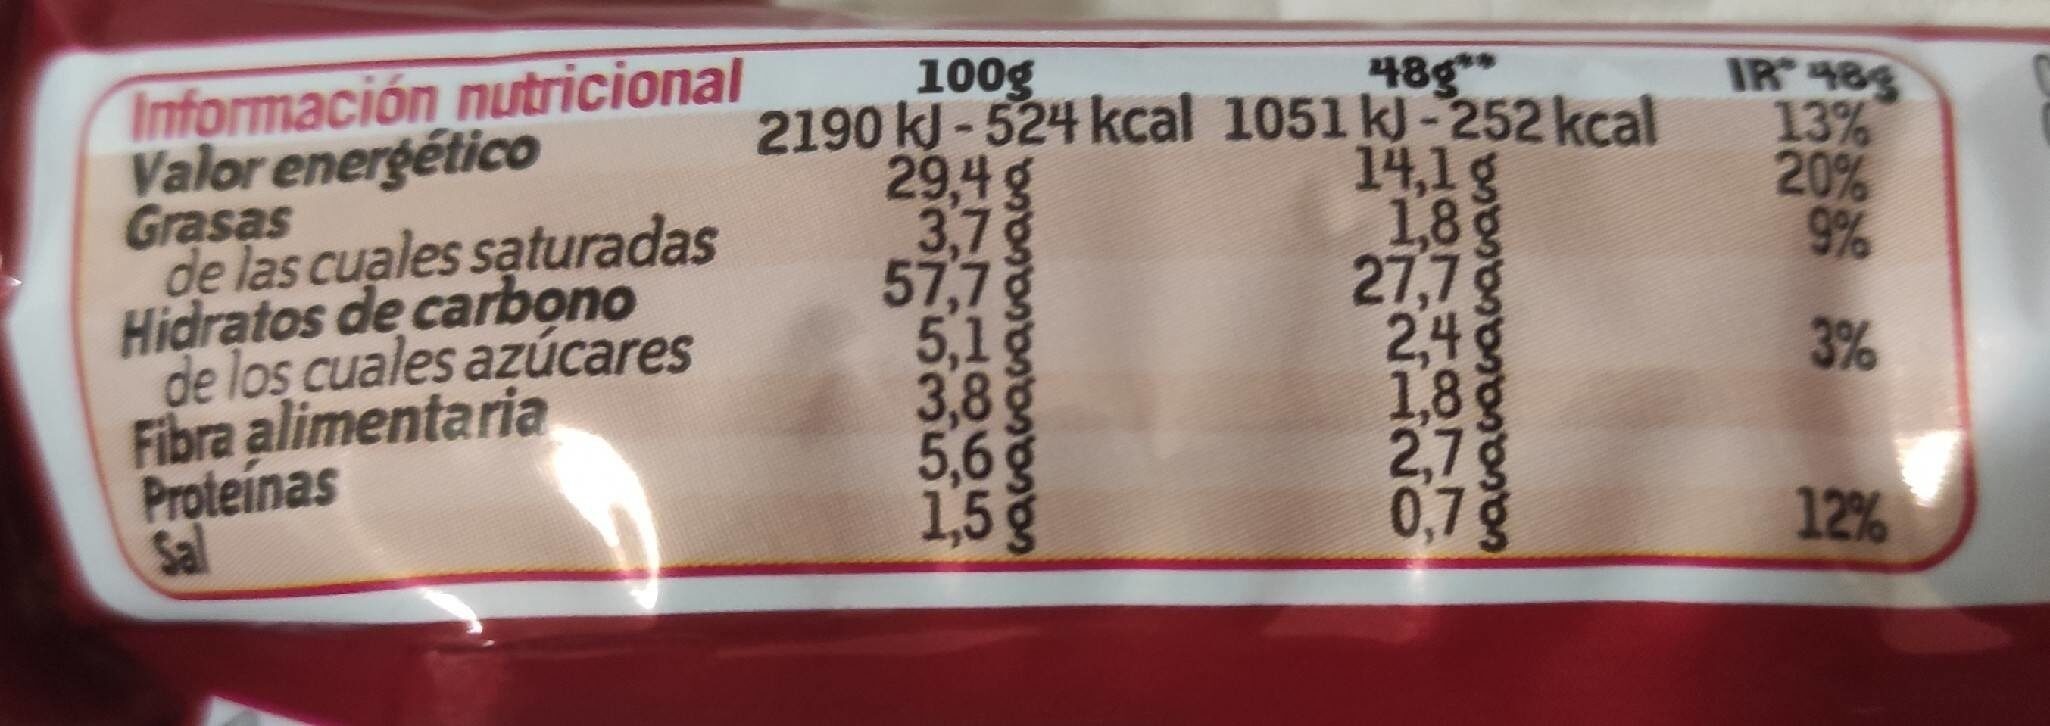 Doritos Bits Original - Información nutricional